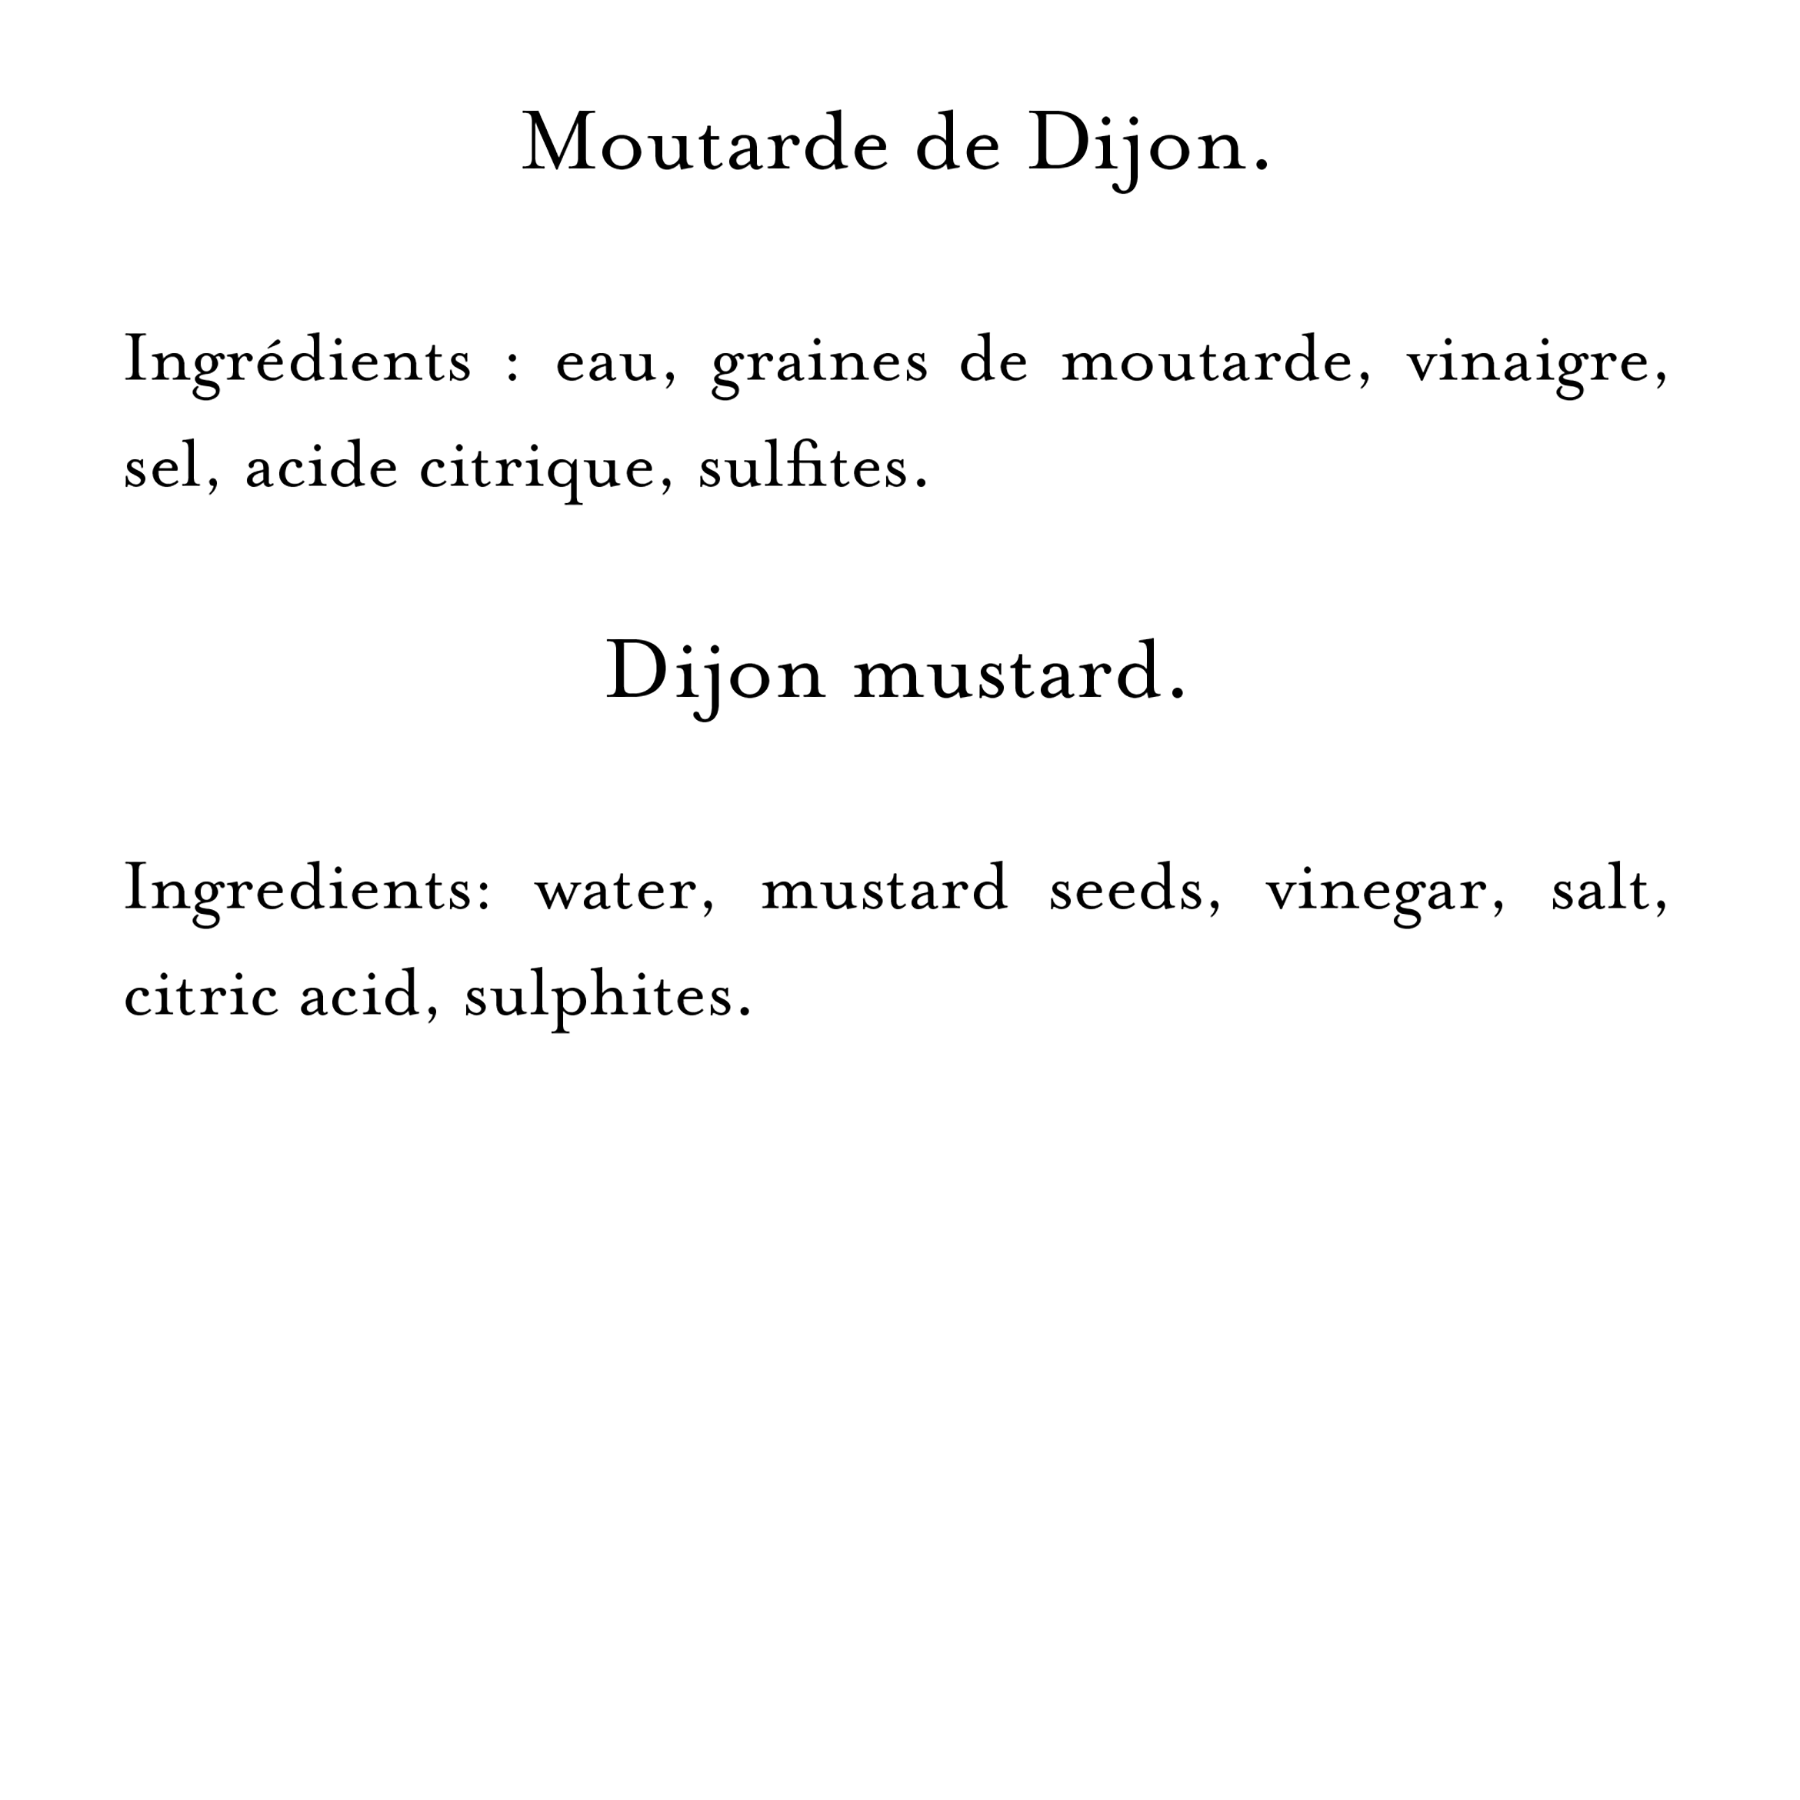 Ingredients (20)